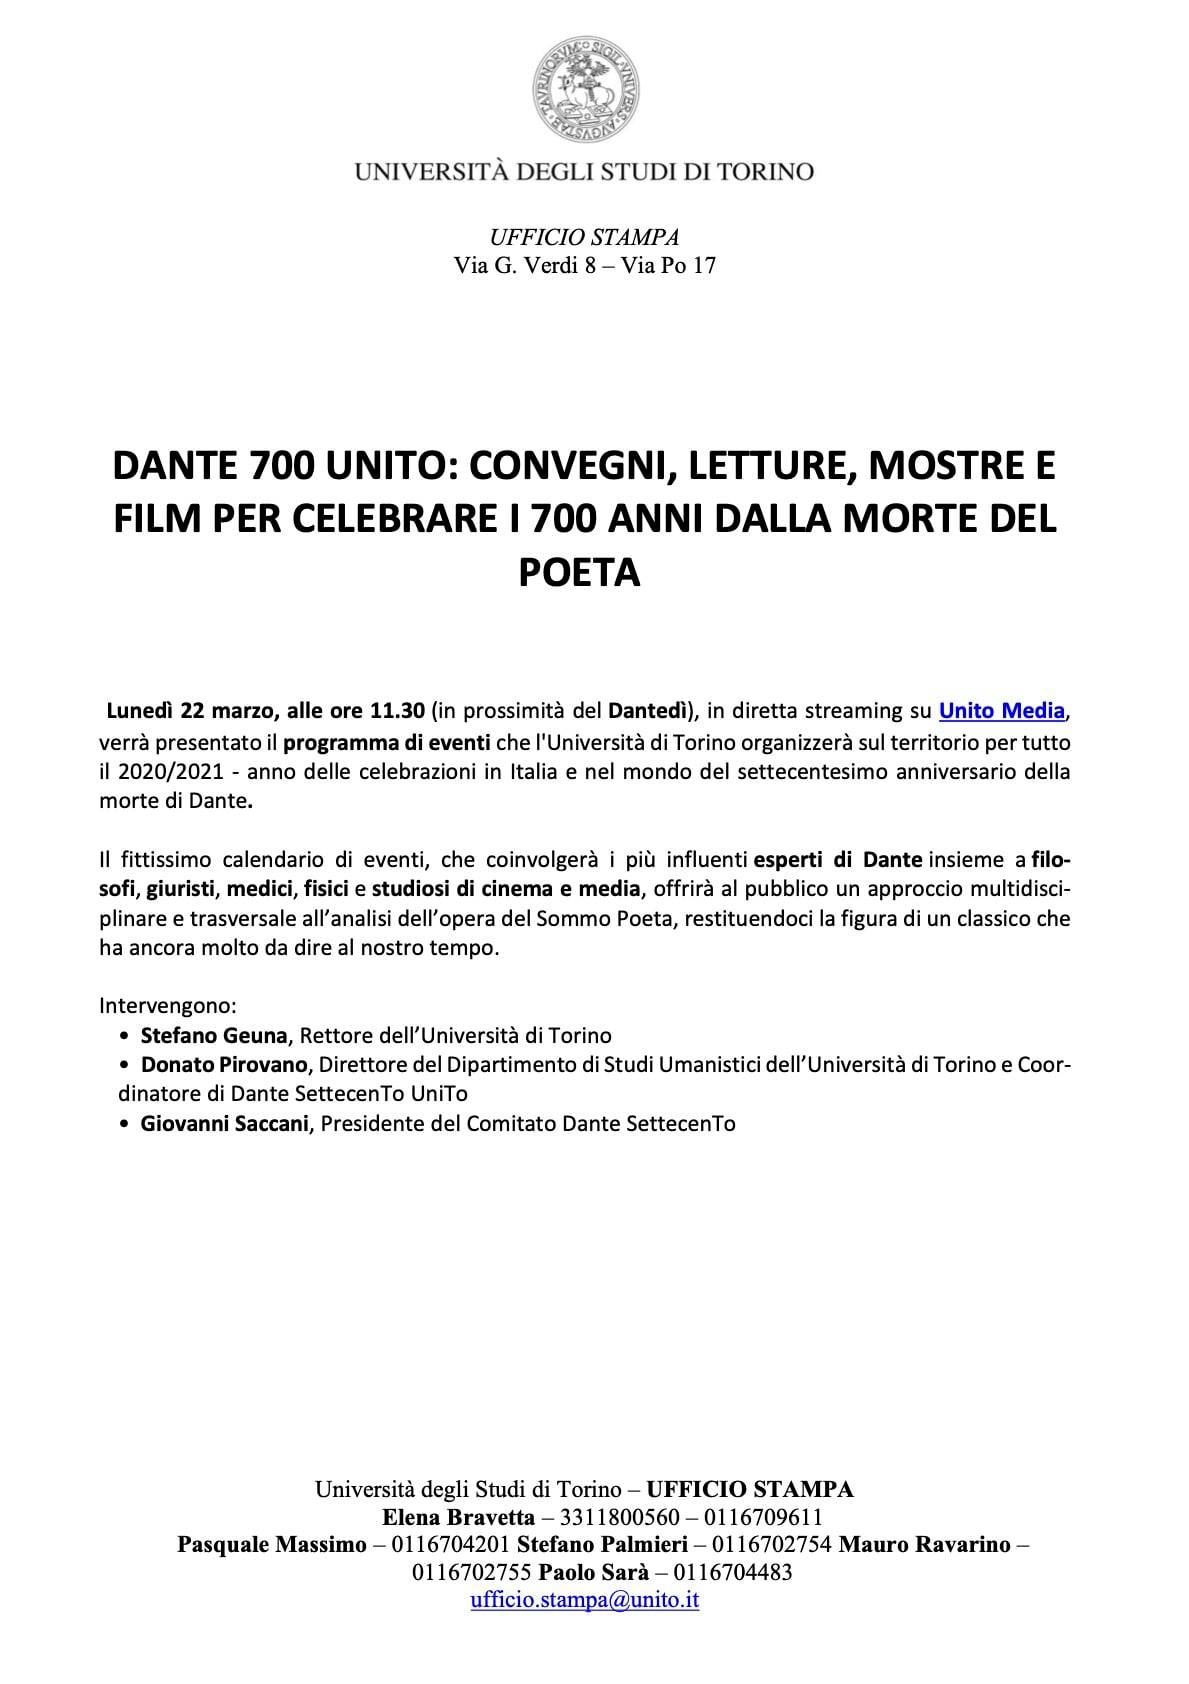 22/3/2021 Dante 700 UniTO